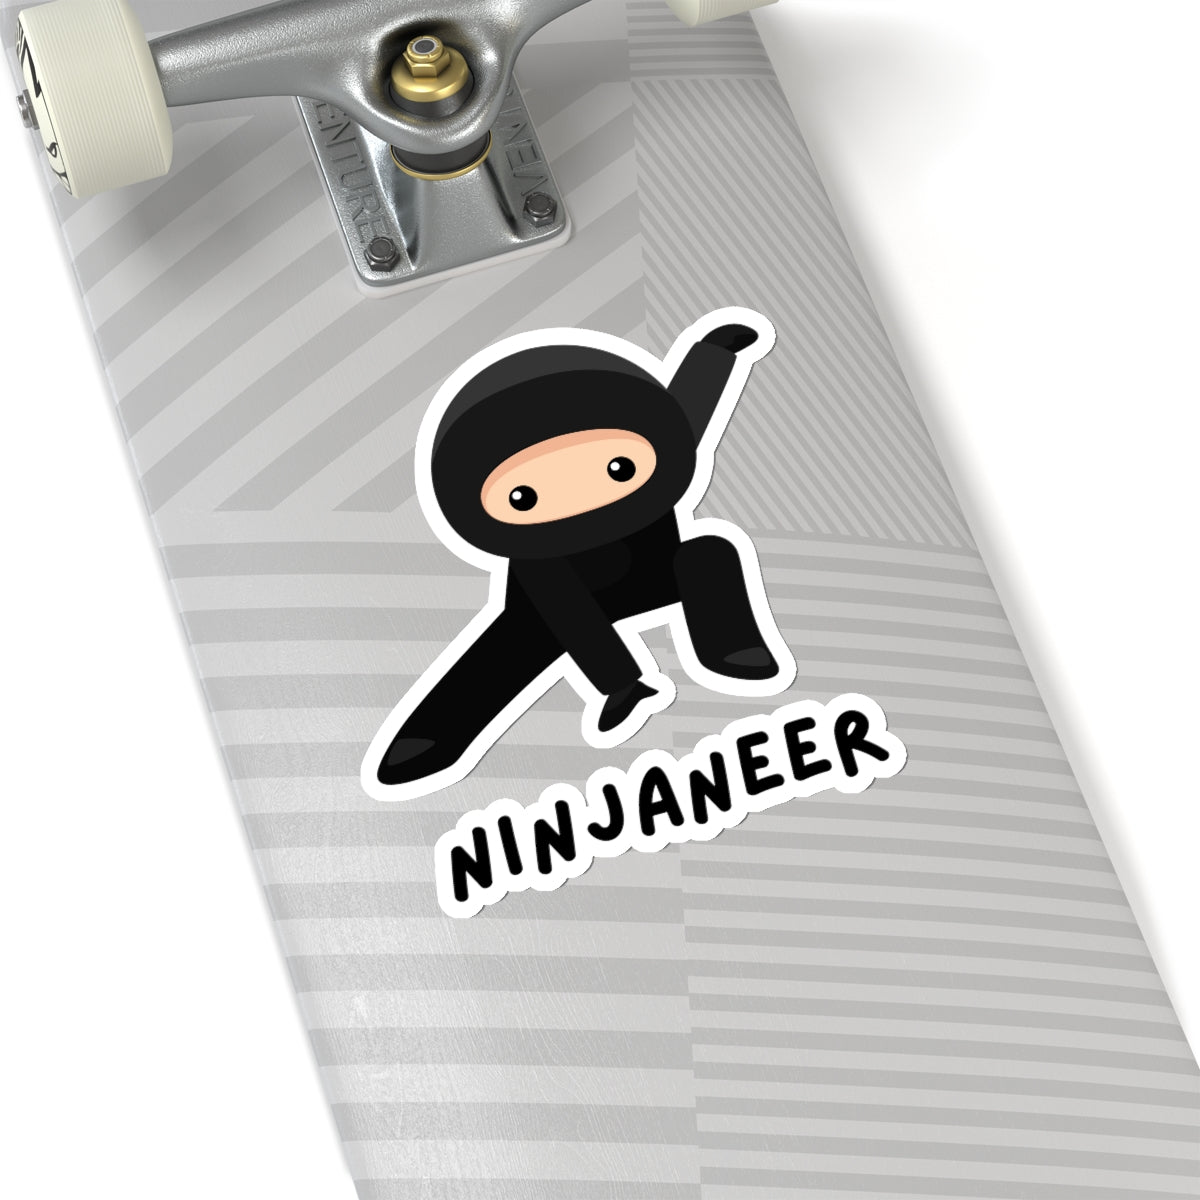 Ninjaneer - Developer / Programmer / Software Engineer Kiss Cut Sticker